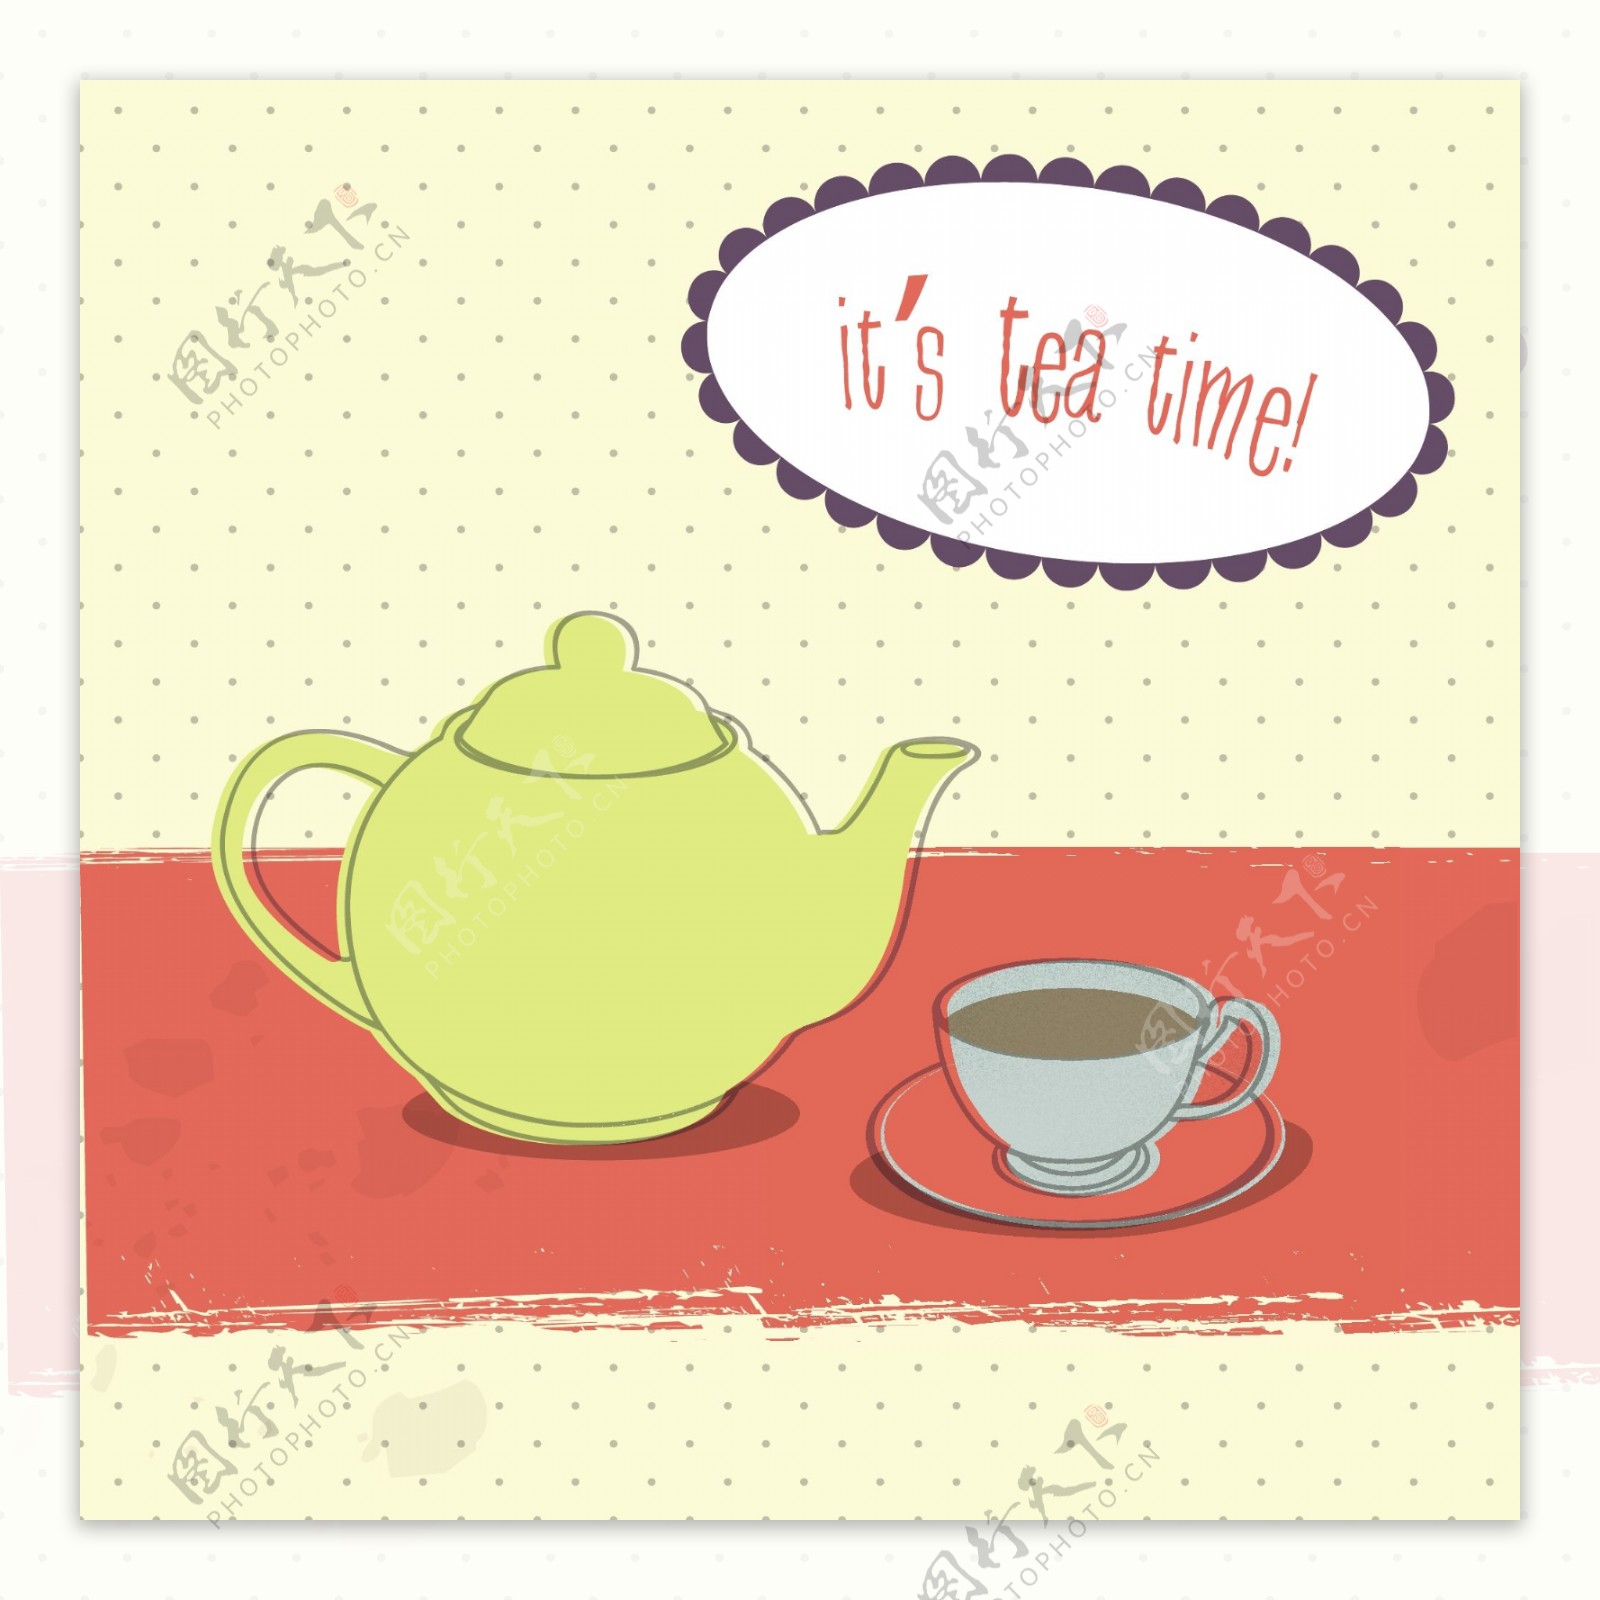 下午茶是简单的插画矢量素材